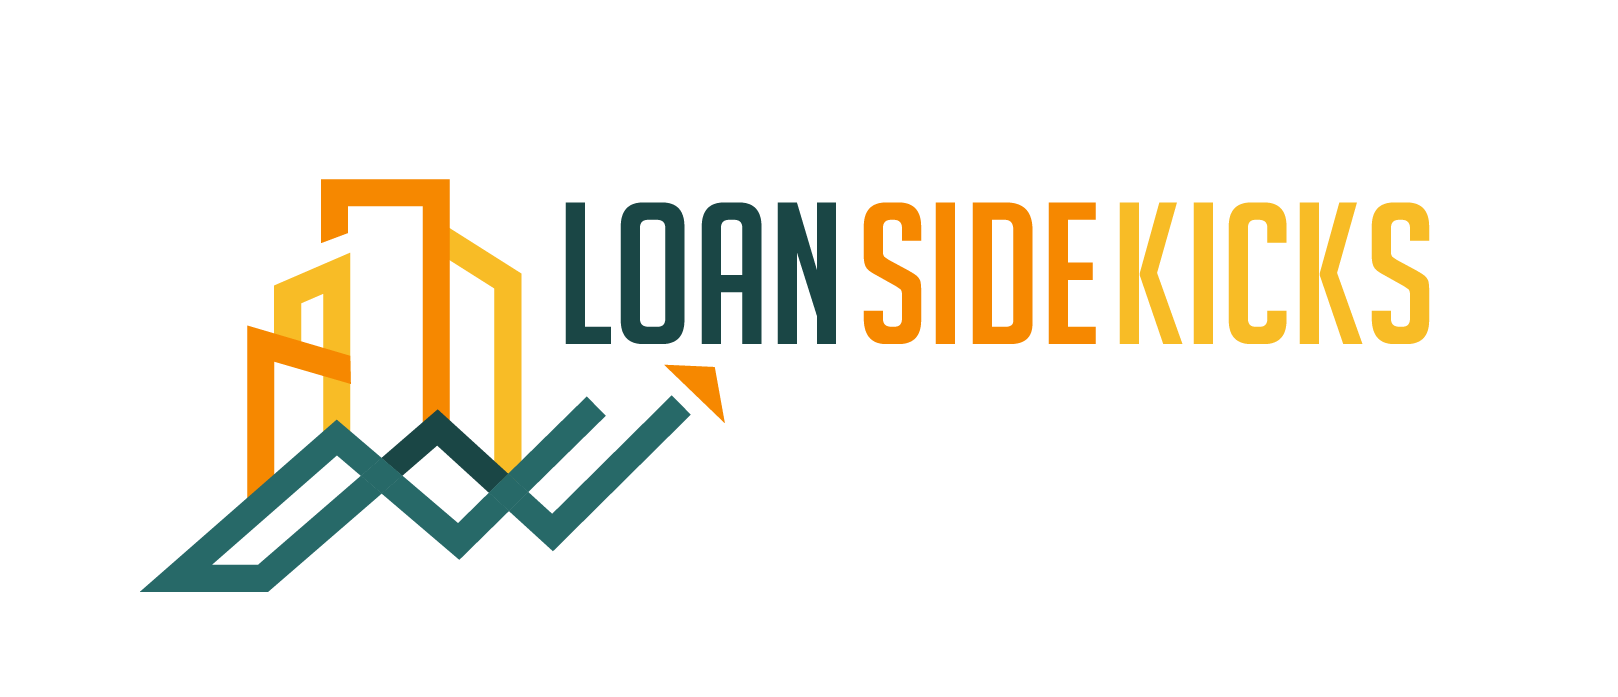 Loan SideKicks